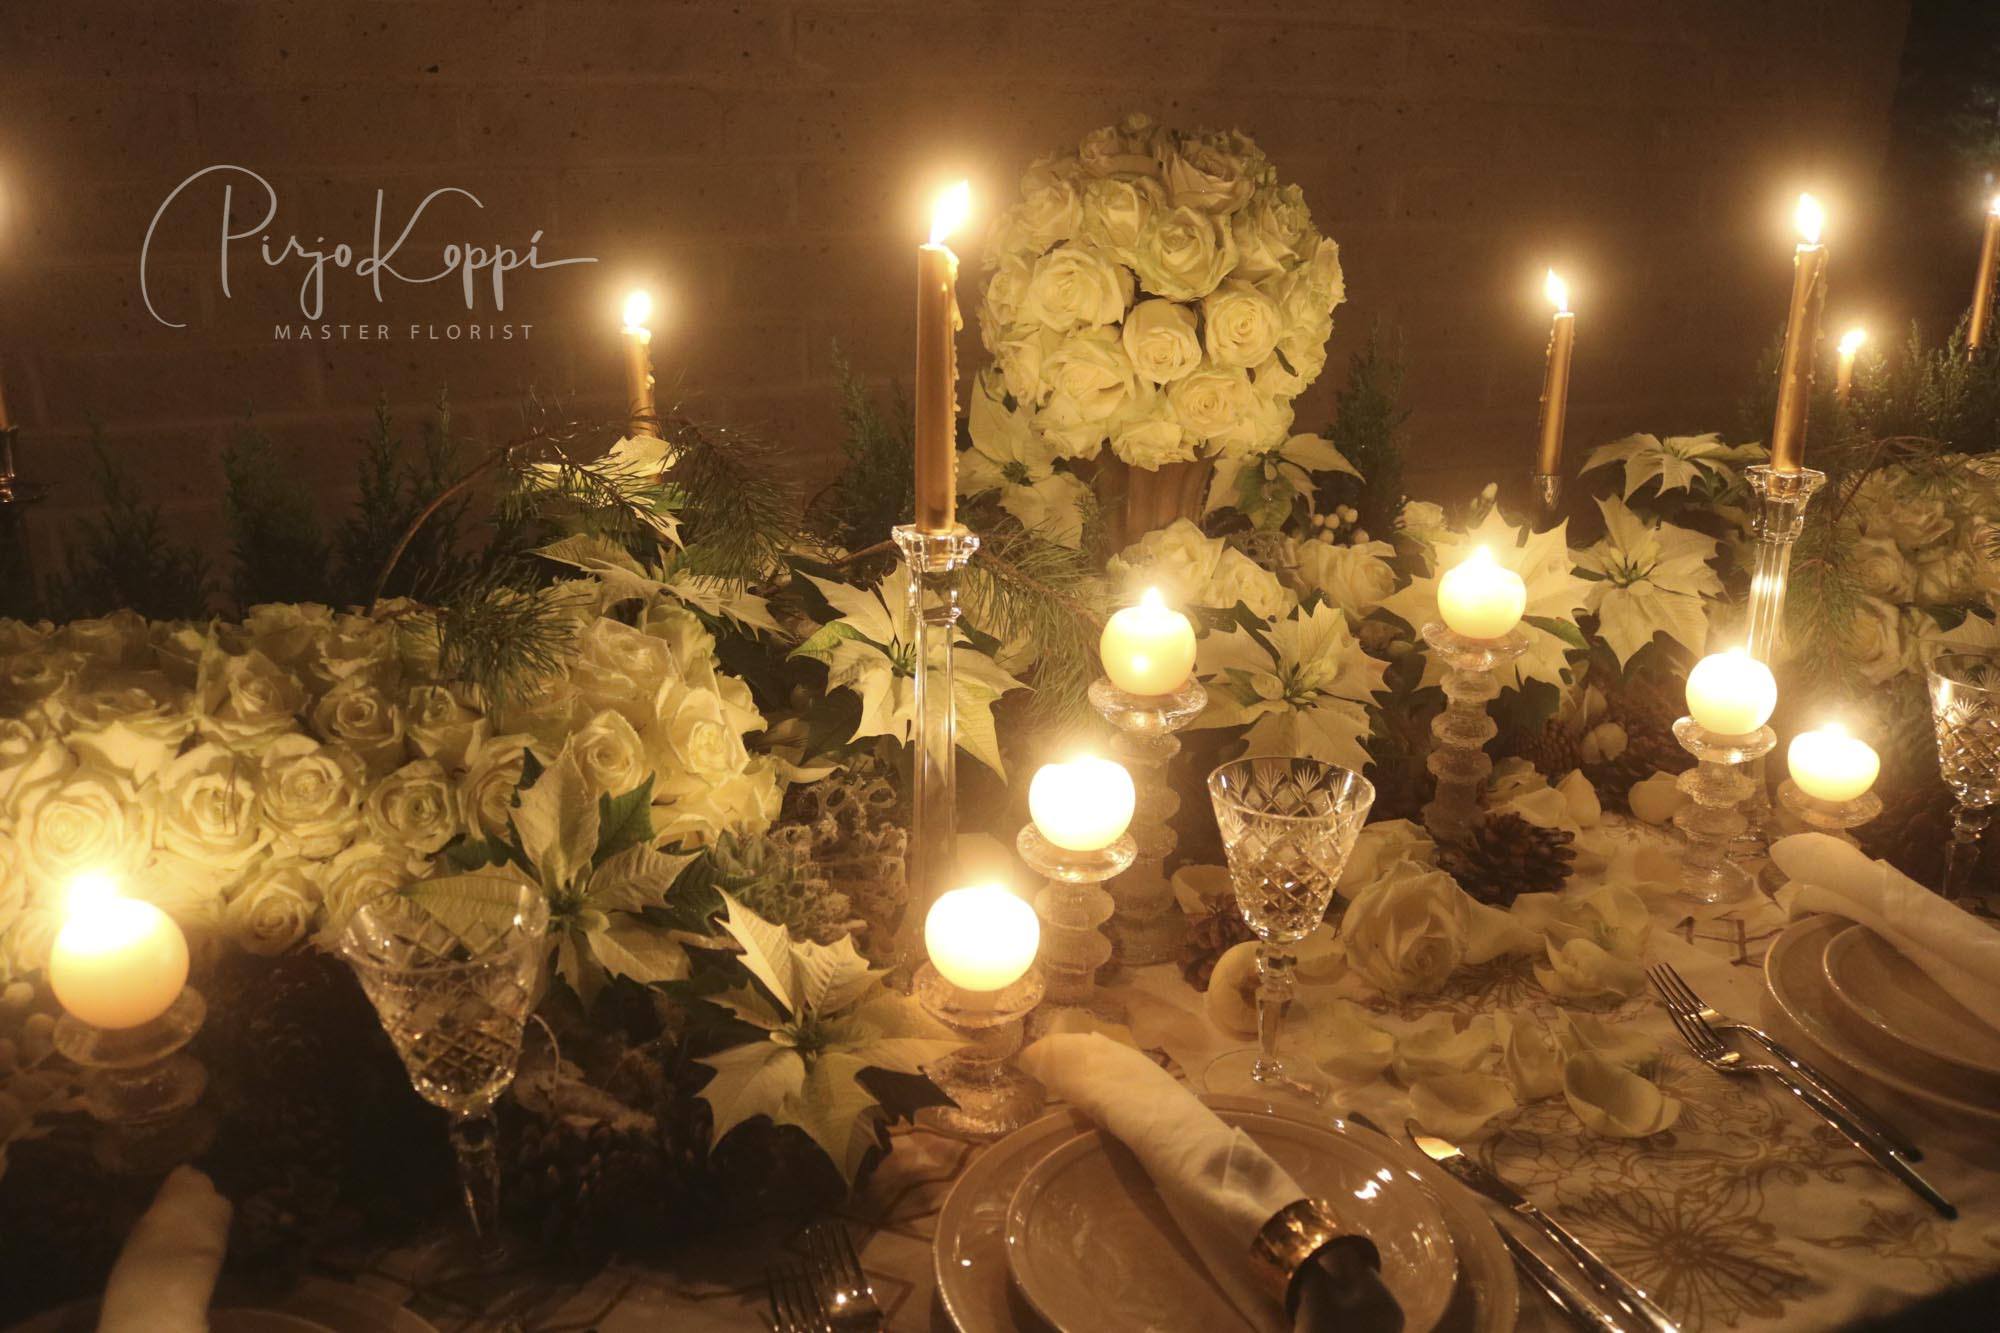 Pirjo's Elegant Festive Dinner Table with Porta Nova White Naomi 3